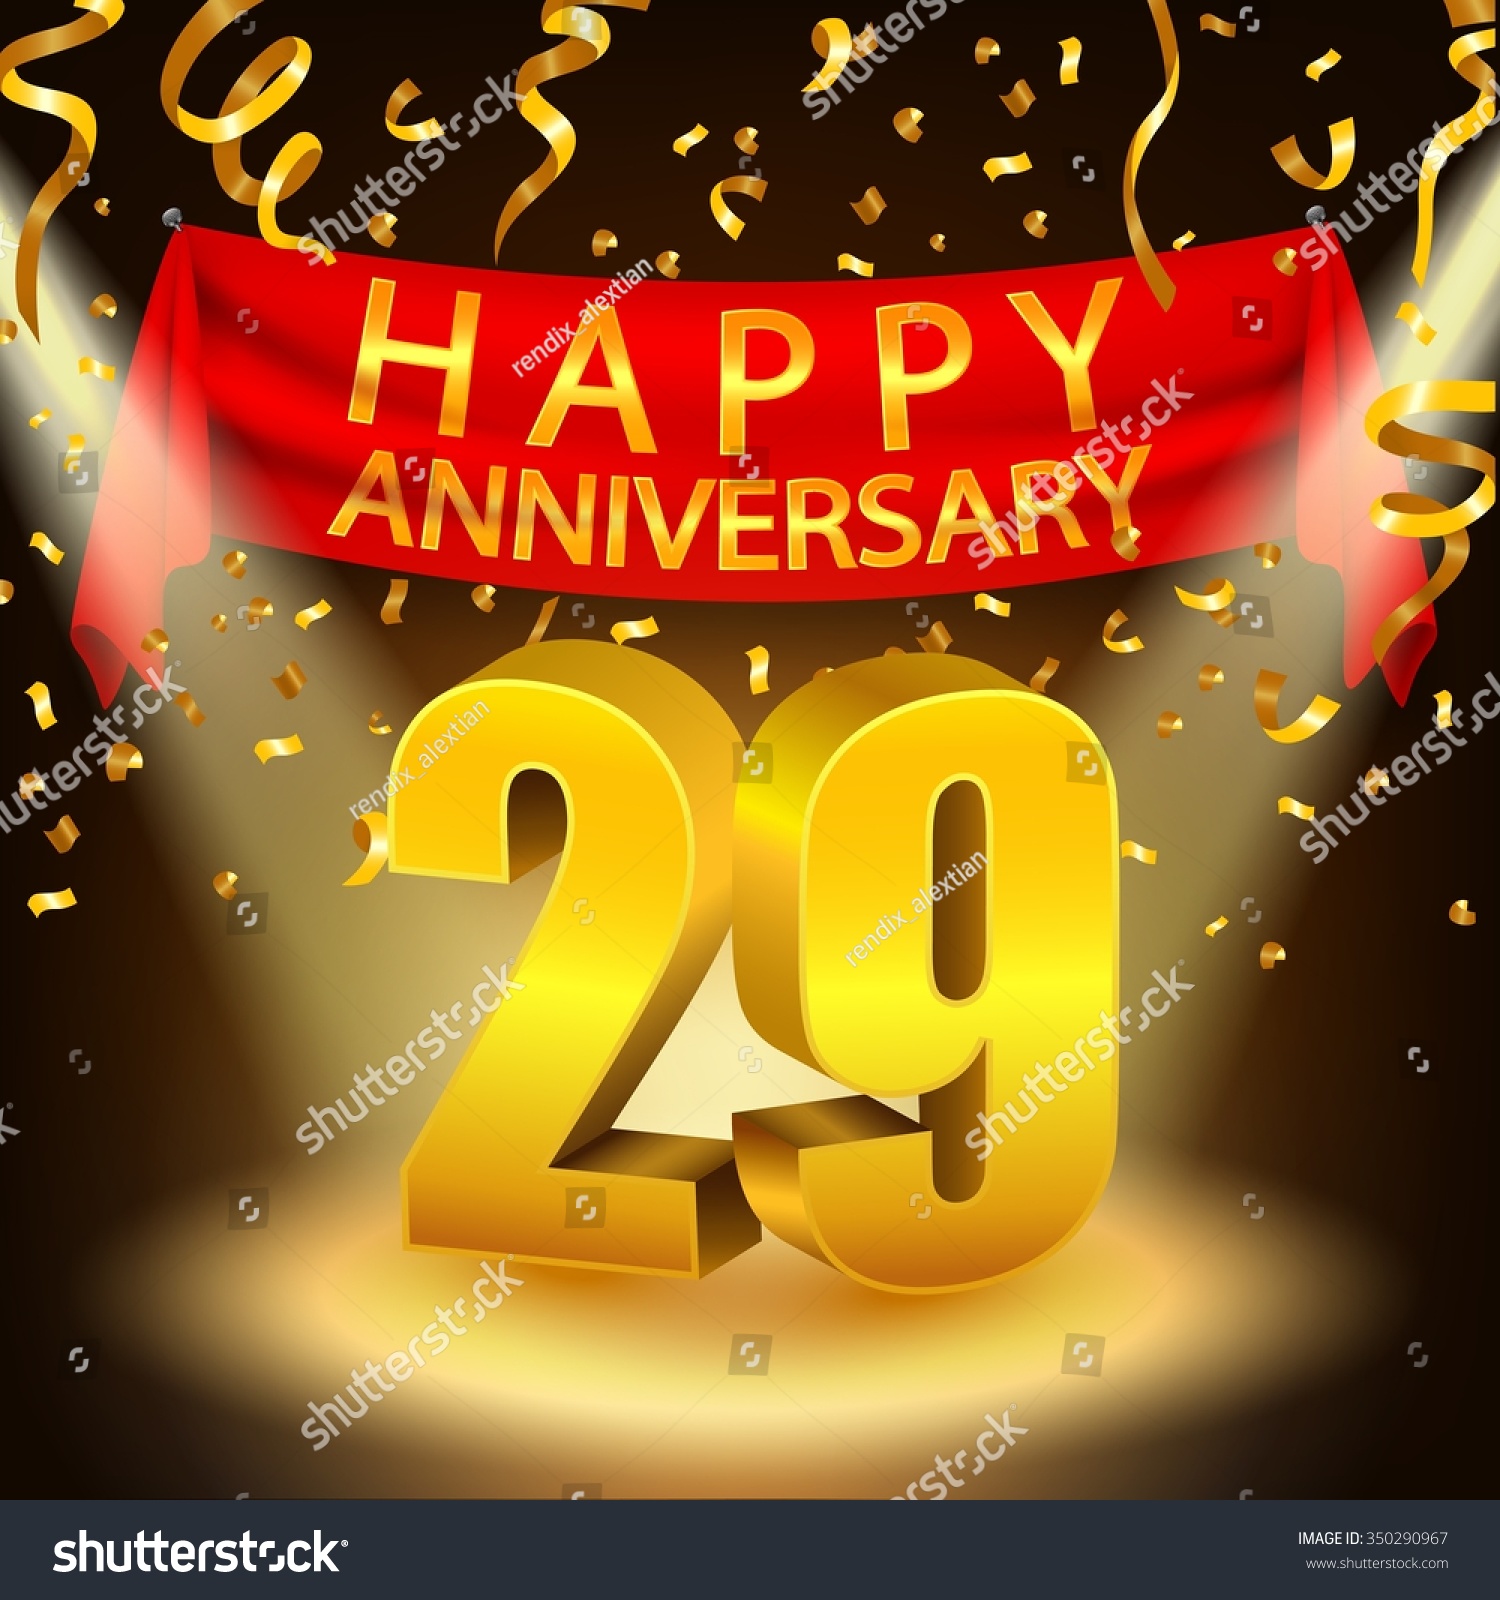 happy-29th-anniversary-celebration-golden-confetti-stock-illustration-350290967-shutterstock